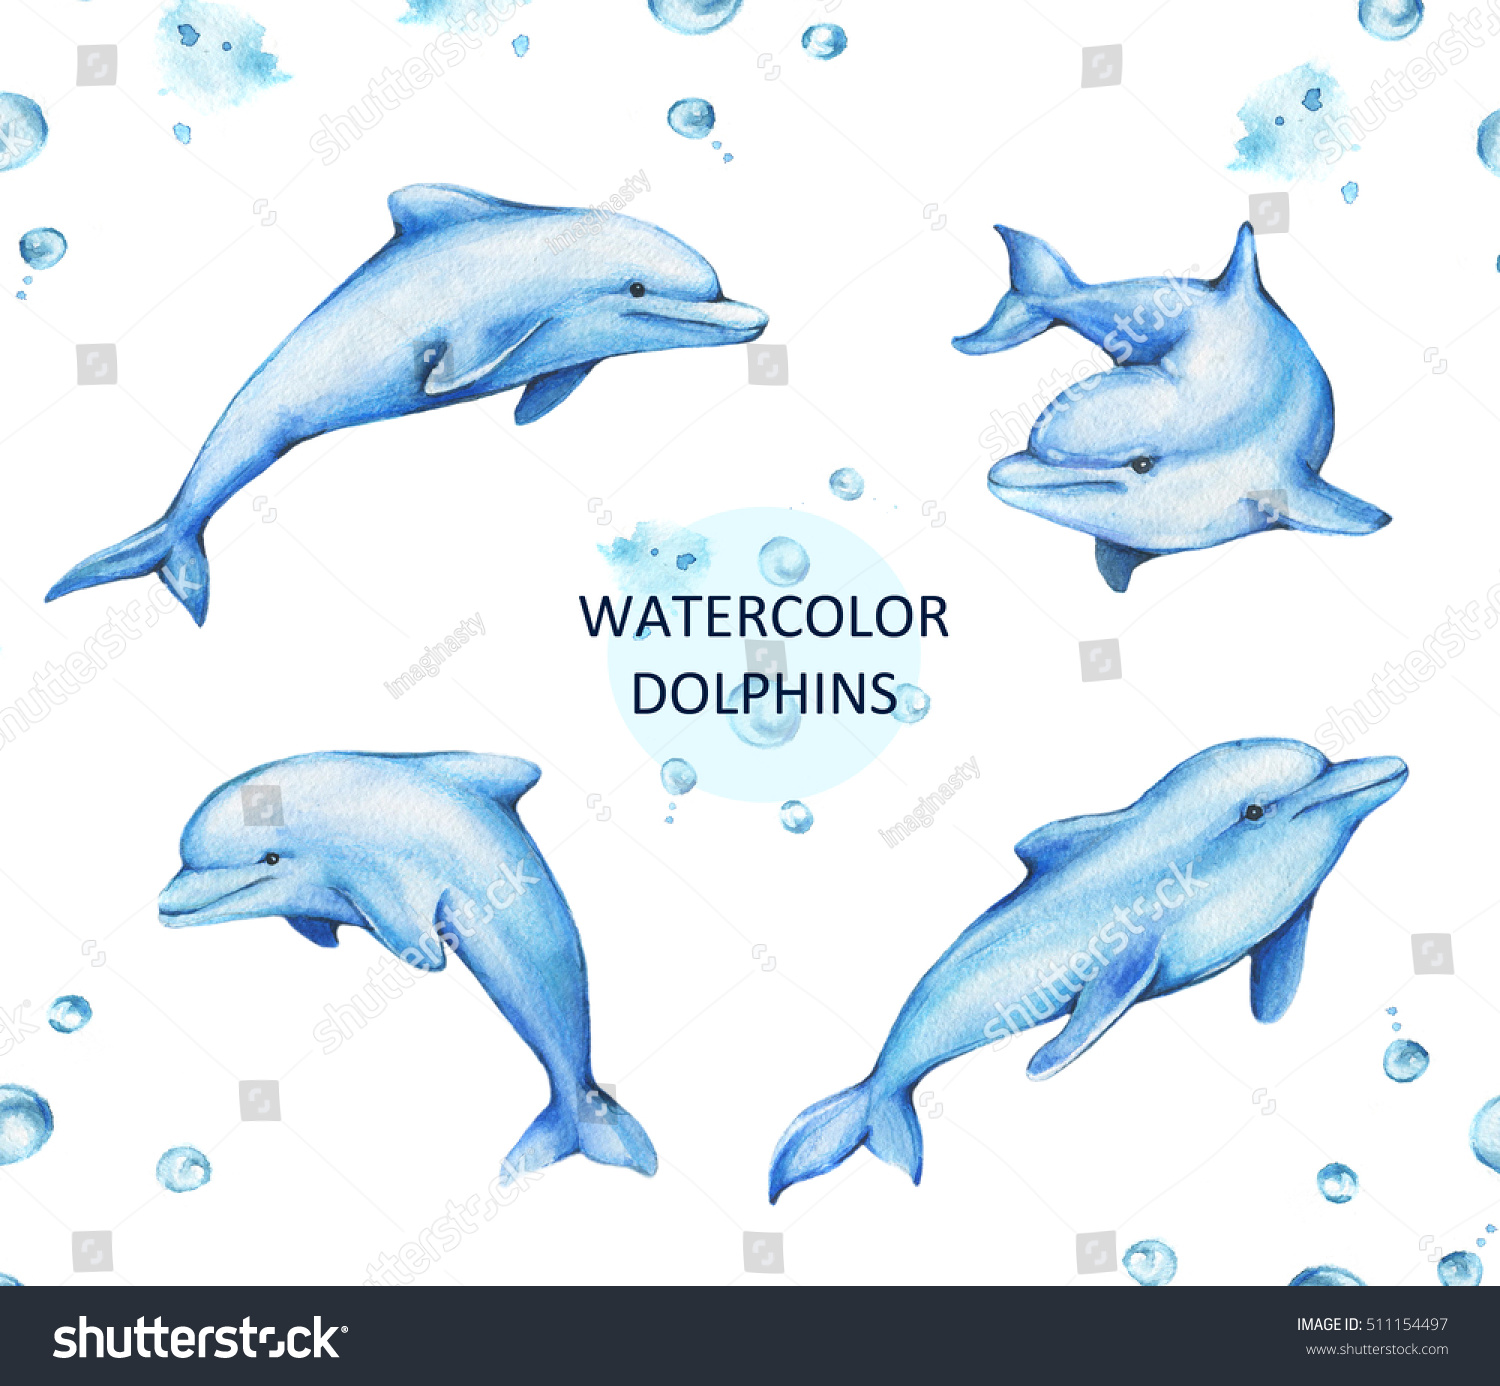 手描きの水彩イラスト 白い背景にイルカ のイラスト素材